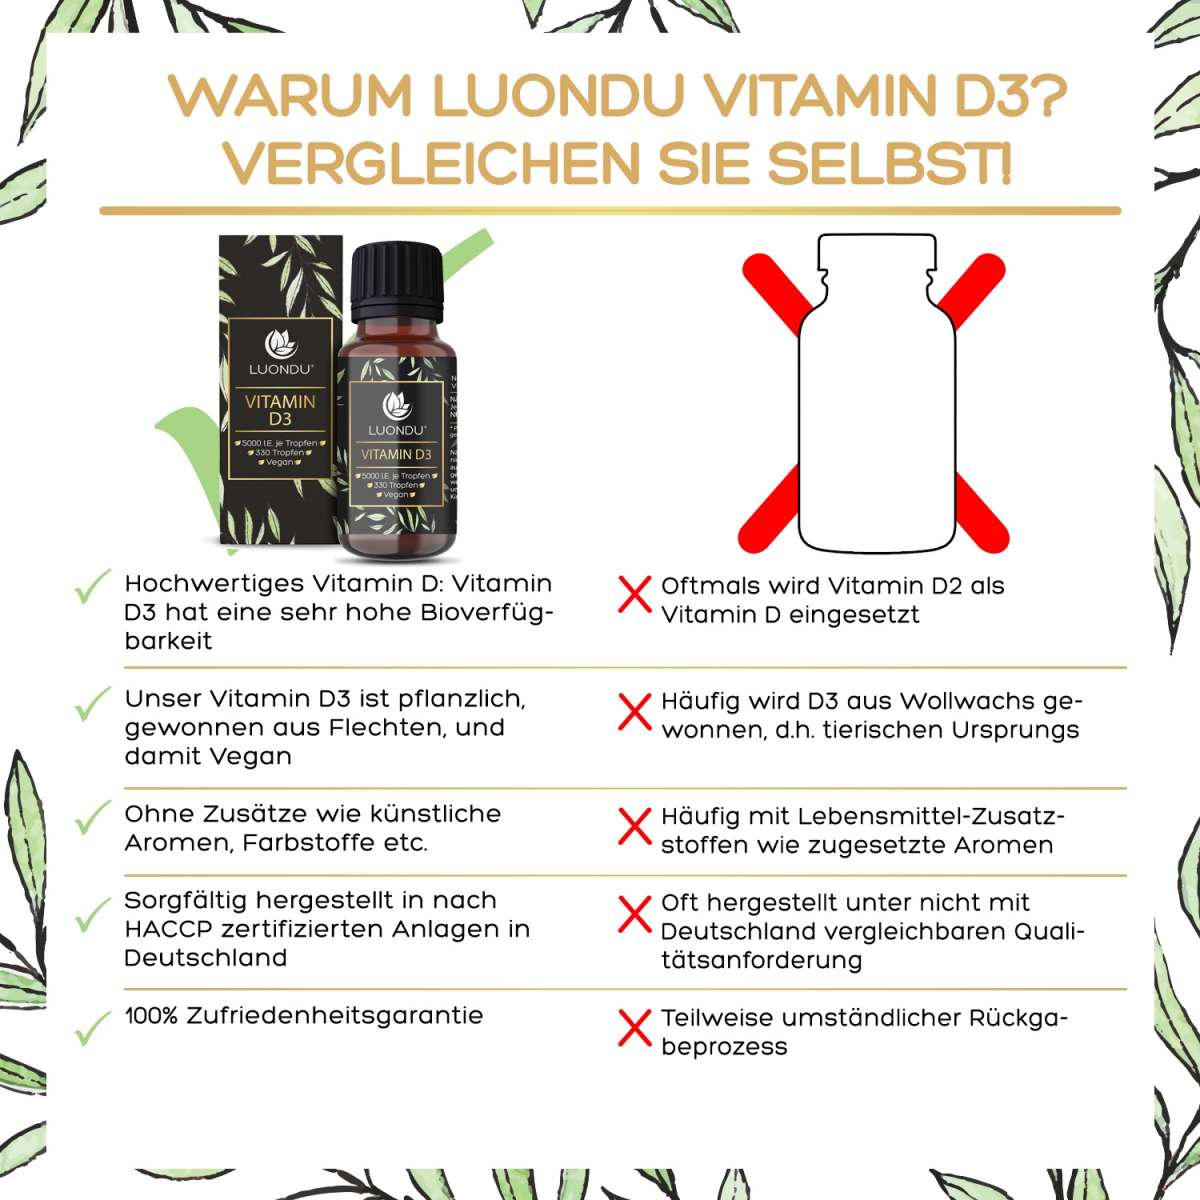 Luondu Vitamin D3 5000 I.E. Vegan aus Flechten - 330 Tropfen